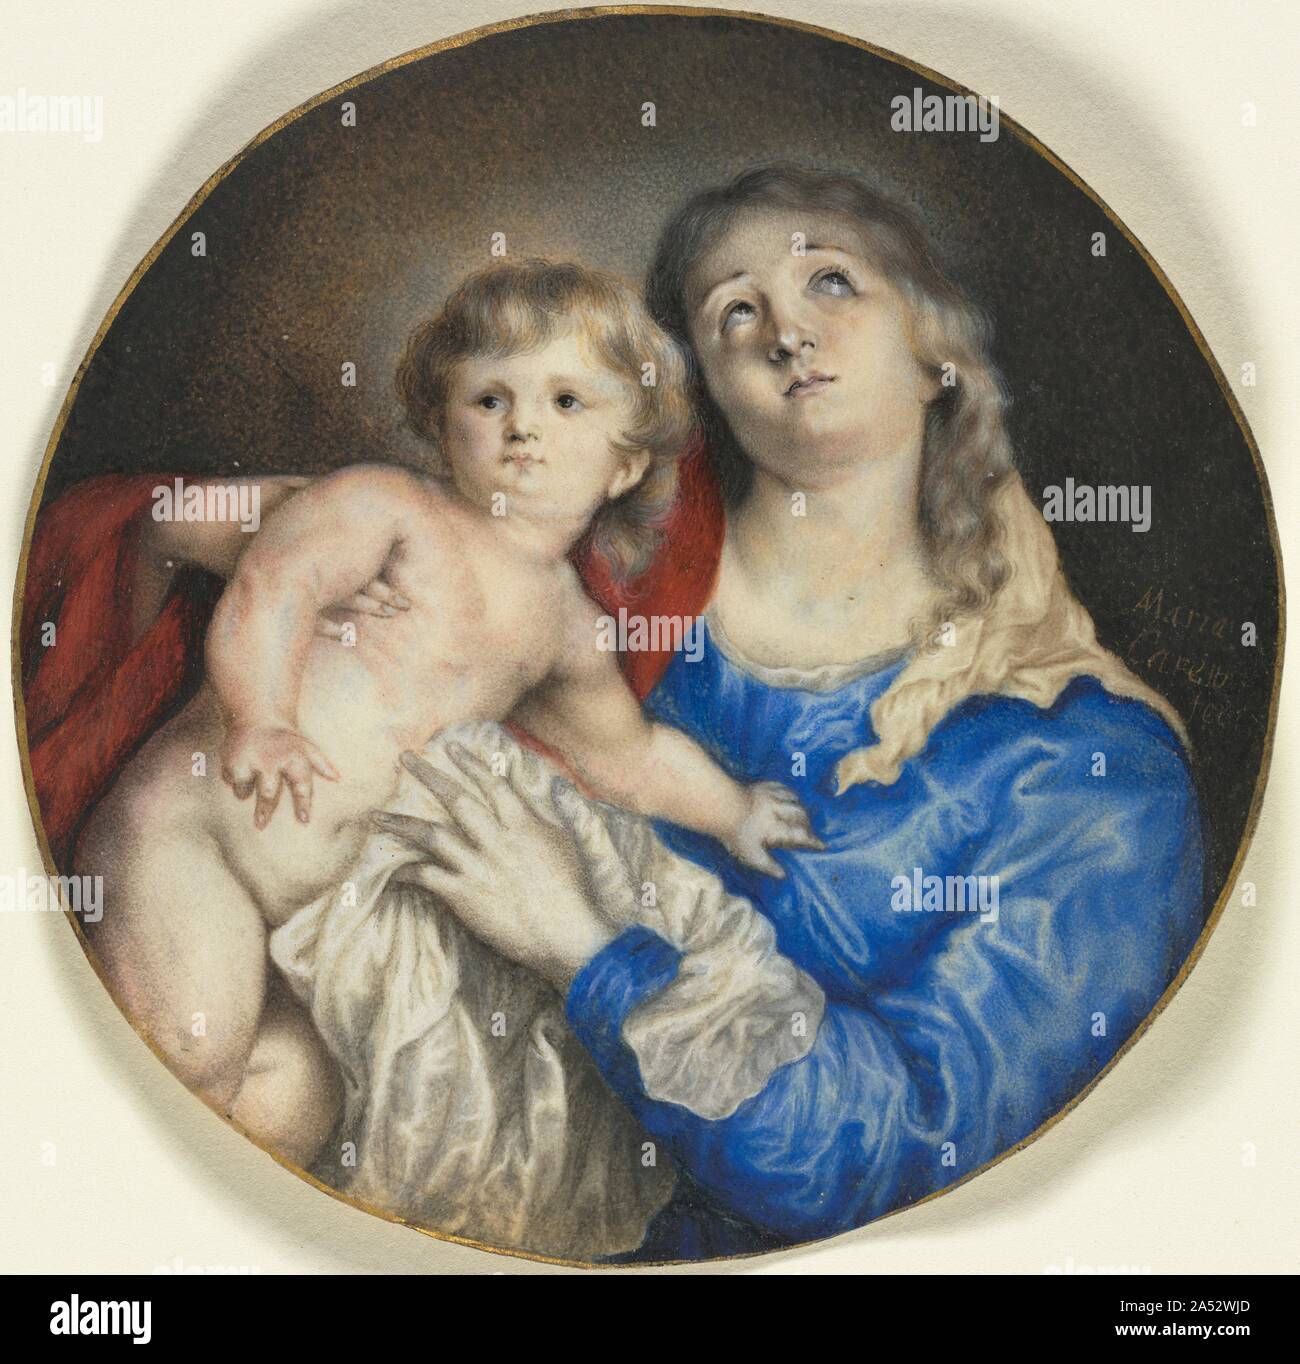 Vierge à l'enfant, ch. 1662. Plus grande taille que la plupart des miniatures, de la Vierge et l'enfant par Anna Maria Carew est une miniature du cabinet, ou un petit travail sur vélin, émail, ivoire ou que des copies d'une peinture à l'huile. Dans ce cas, la peinture originale a été par l'artiste flamand Anthony Van Dyck, et gravé par Paulus Pontius autour de 1630 peu de temps après il a été peint. Comme une miniature du cabinet, ce travail est un peu particulier en raison de son sujet religieux et sa simplicité. Miniatures du cabinet avaient tendance au lieu de reproduire des peintures de sujets dramatiques et épisodes dominants dans les mythes religieux ou s Banque D'Images